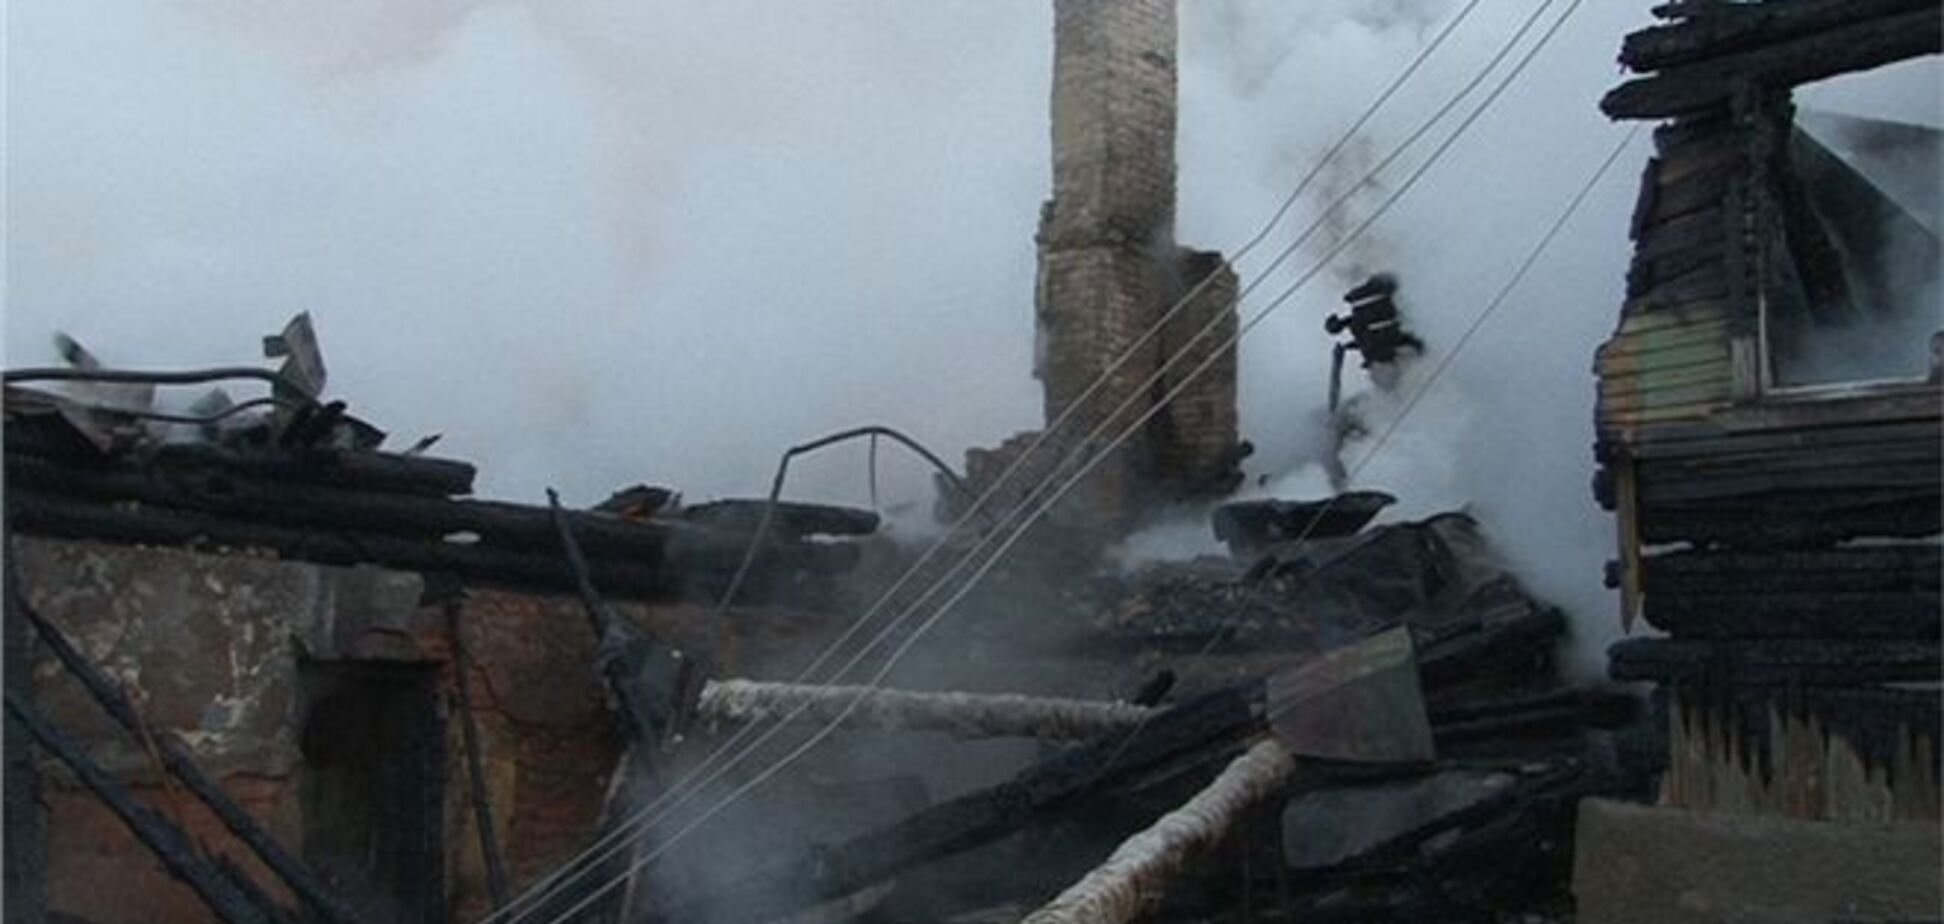 Траур за жертвами пожежі оголошений в Новгородській області Росії 16 вересня